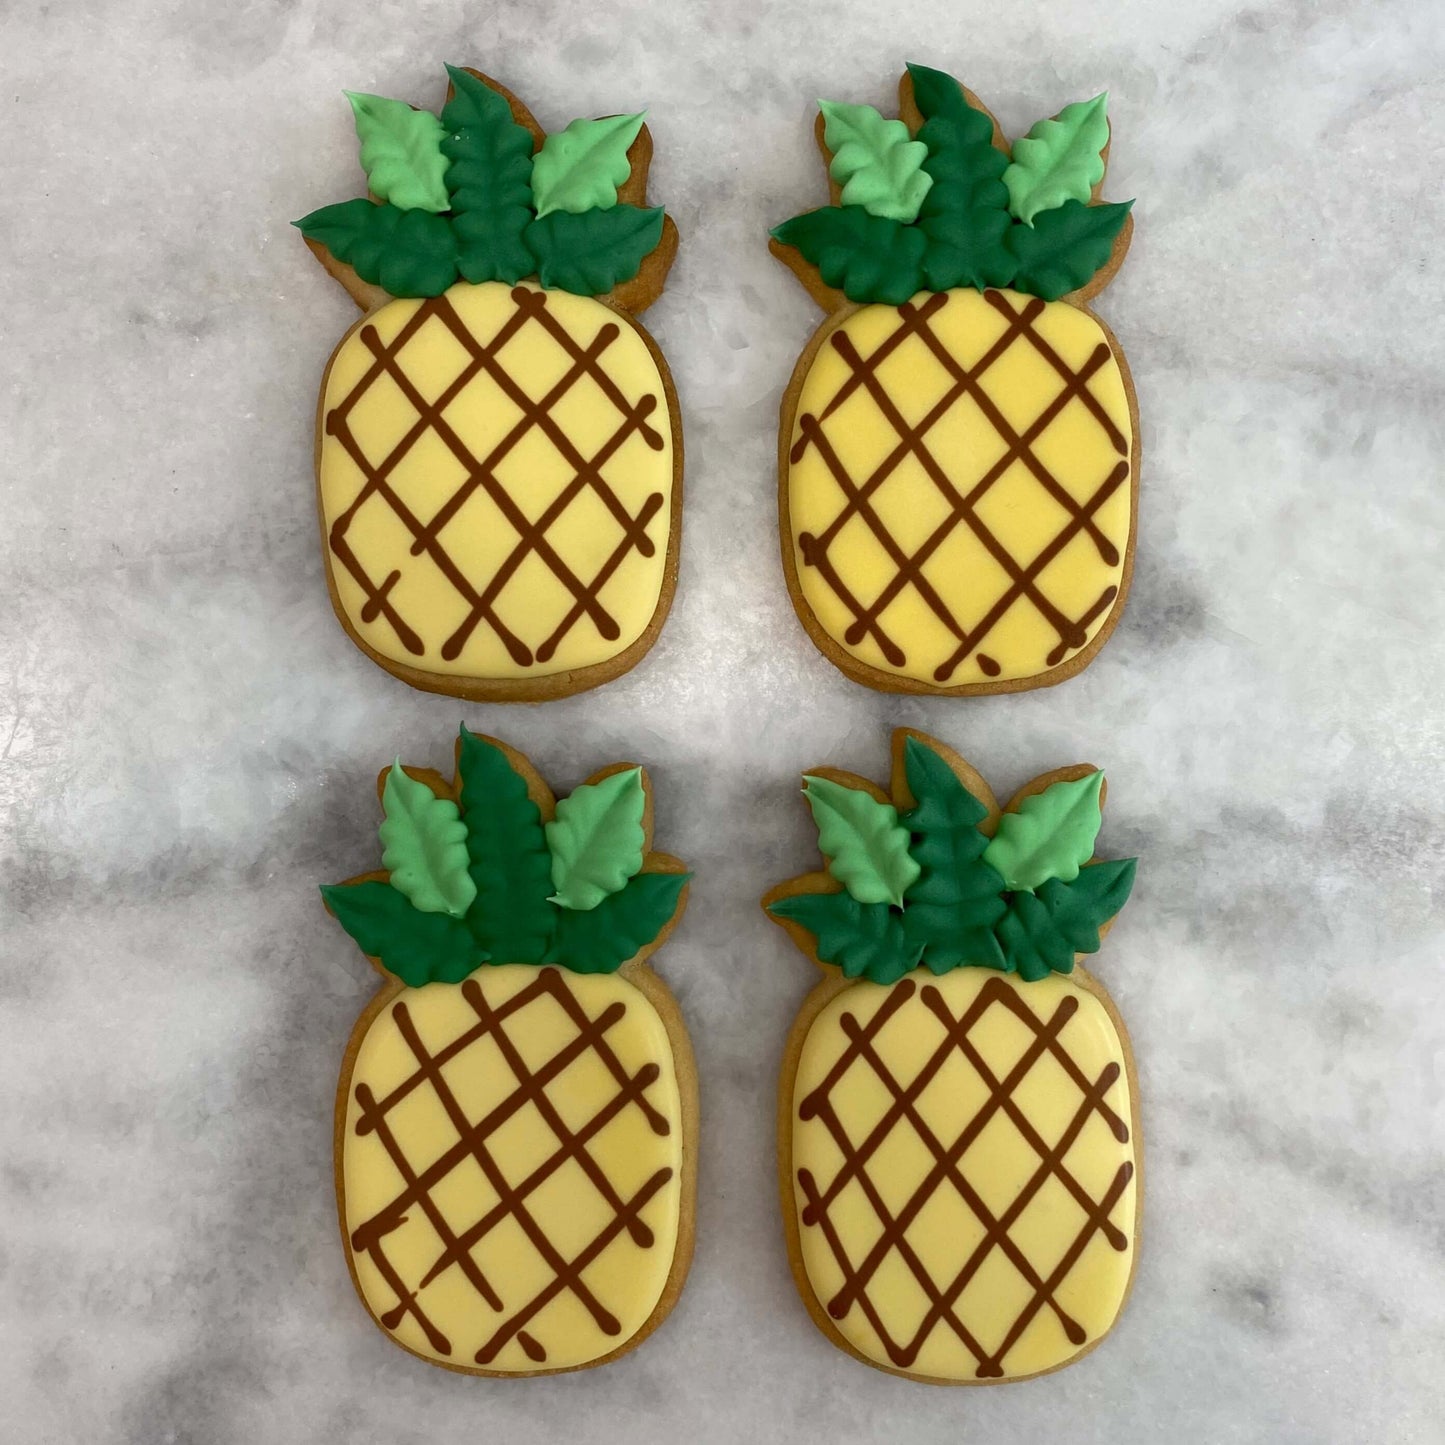 Pineapple Sugar Cookies